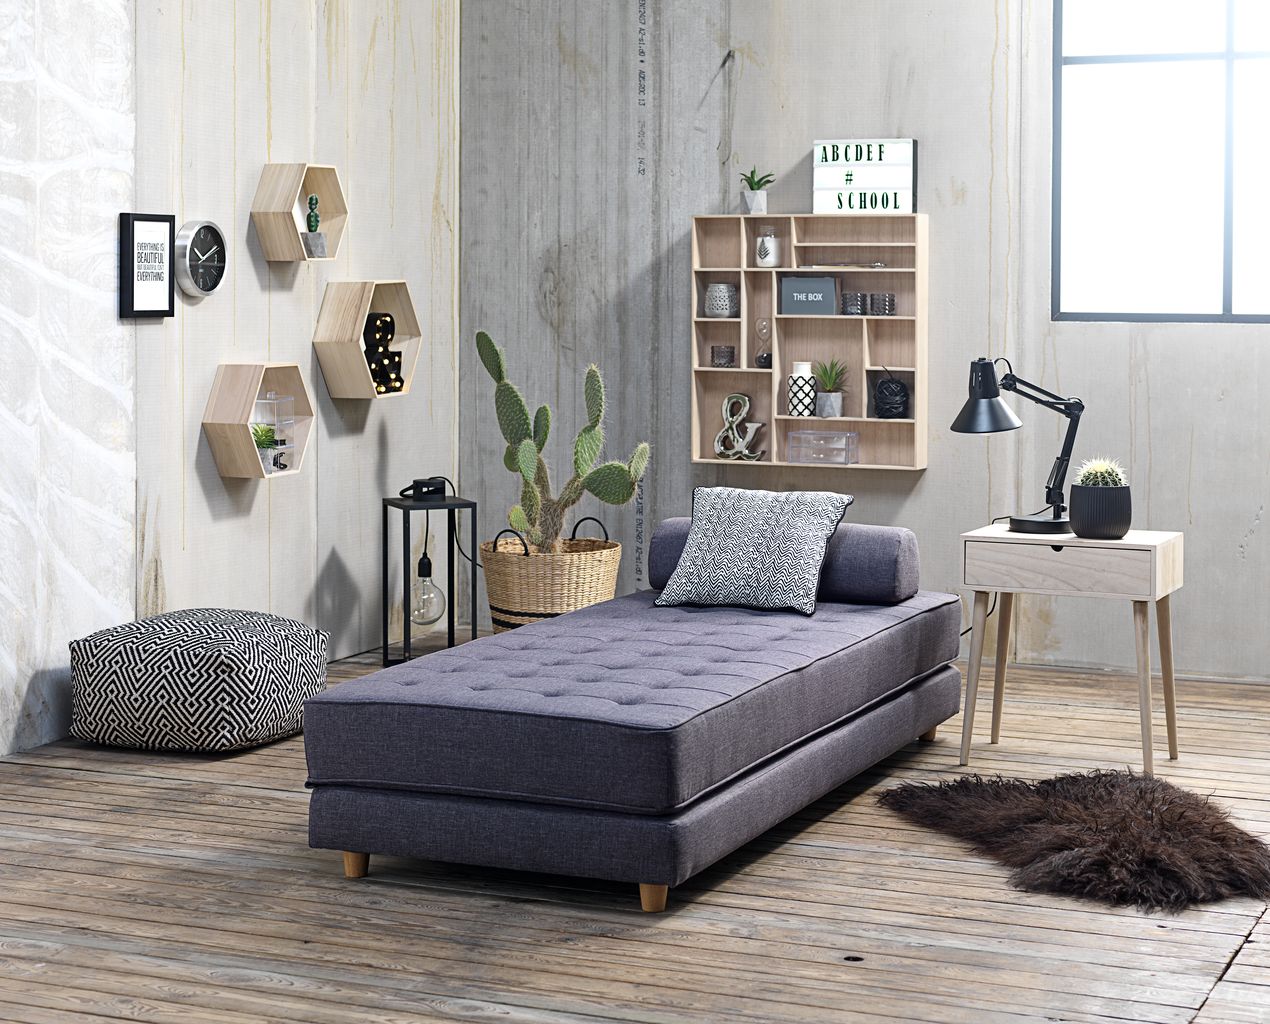 Sofa giường đa năng - Mẫu nội thất phòng ngủ thông minh giúp tiết kiệm diện tích không gian cho phòng ngủ nhỏ